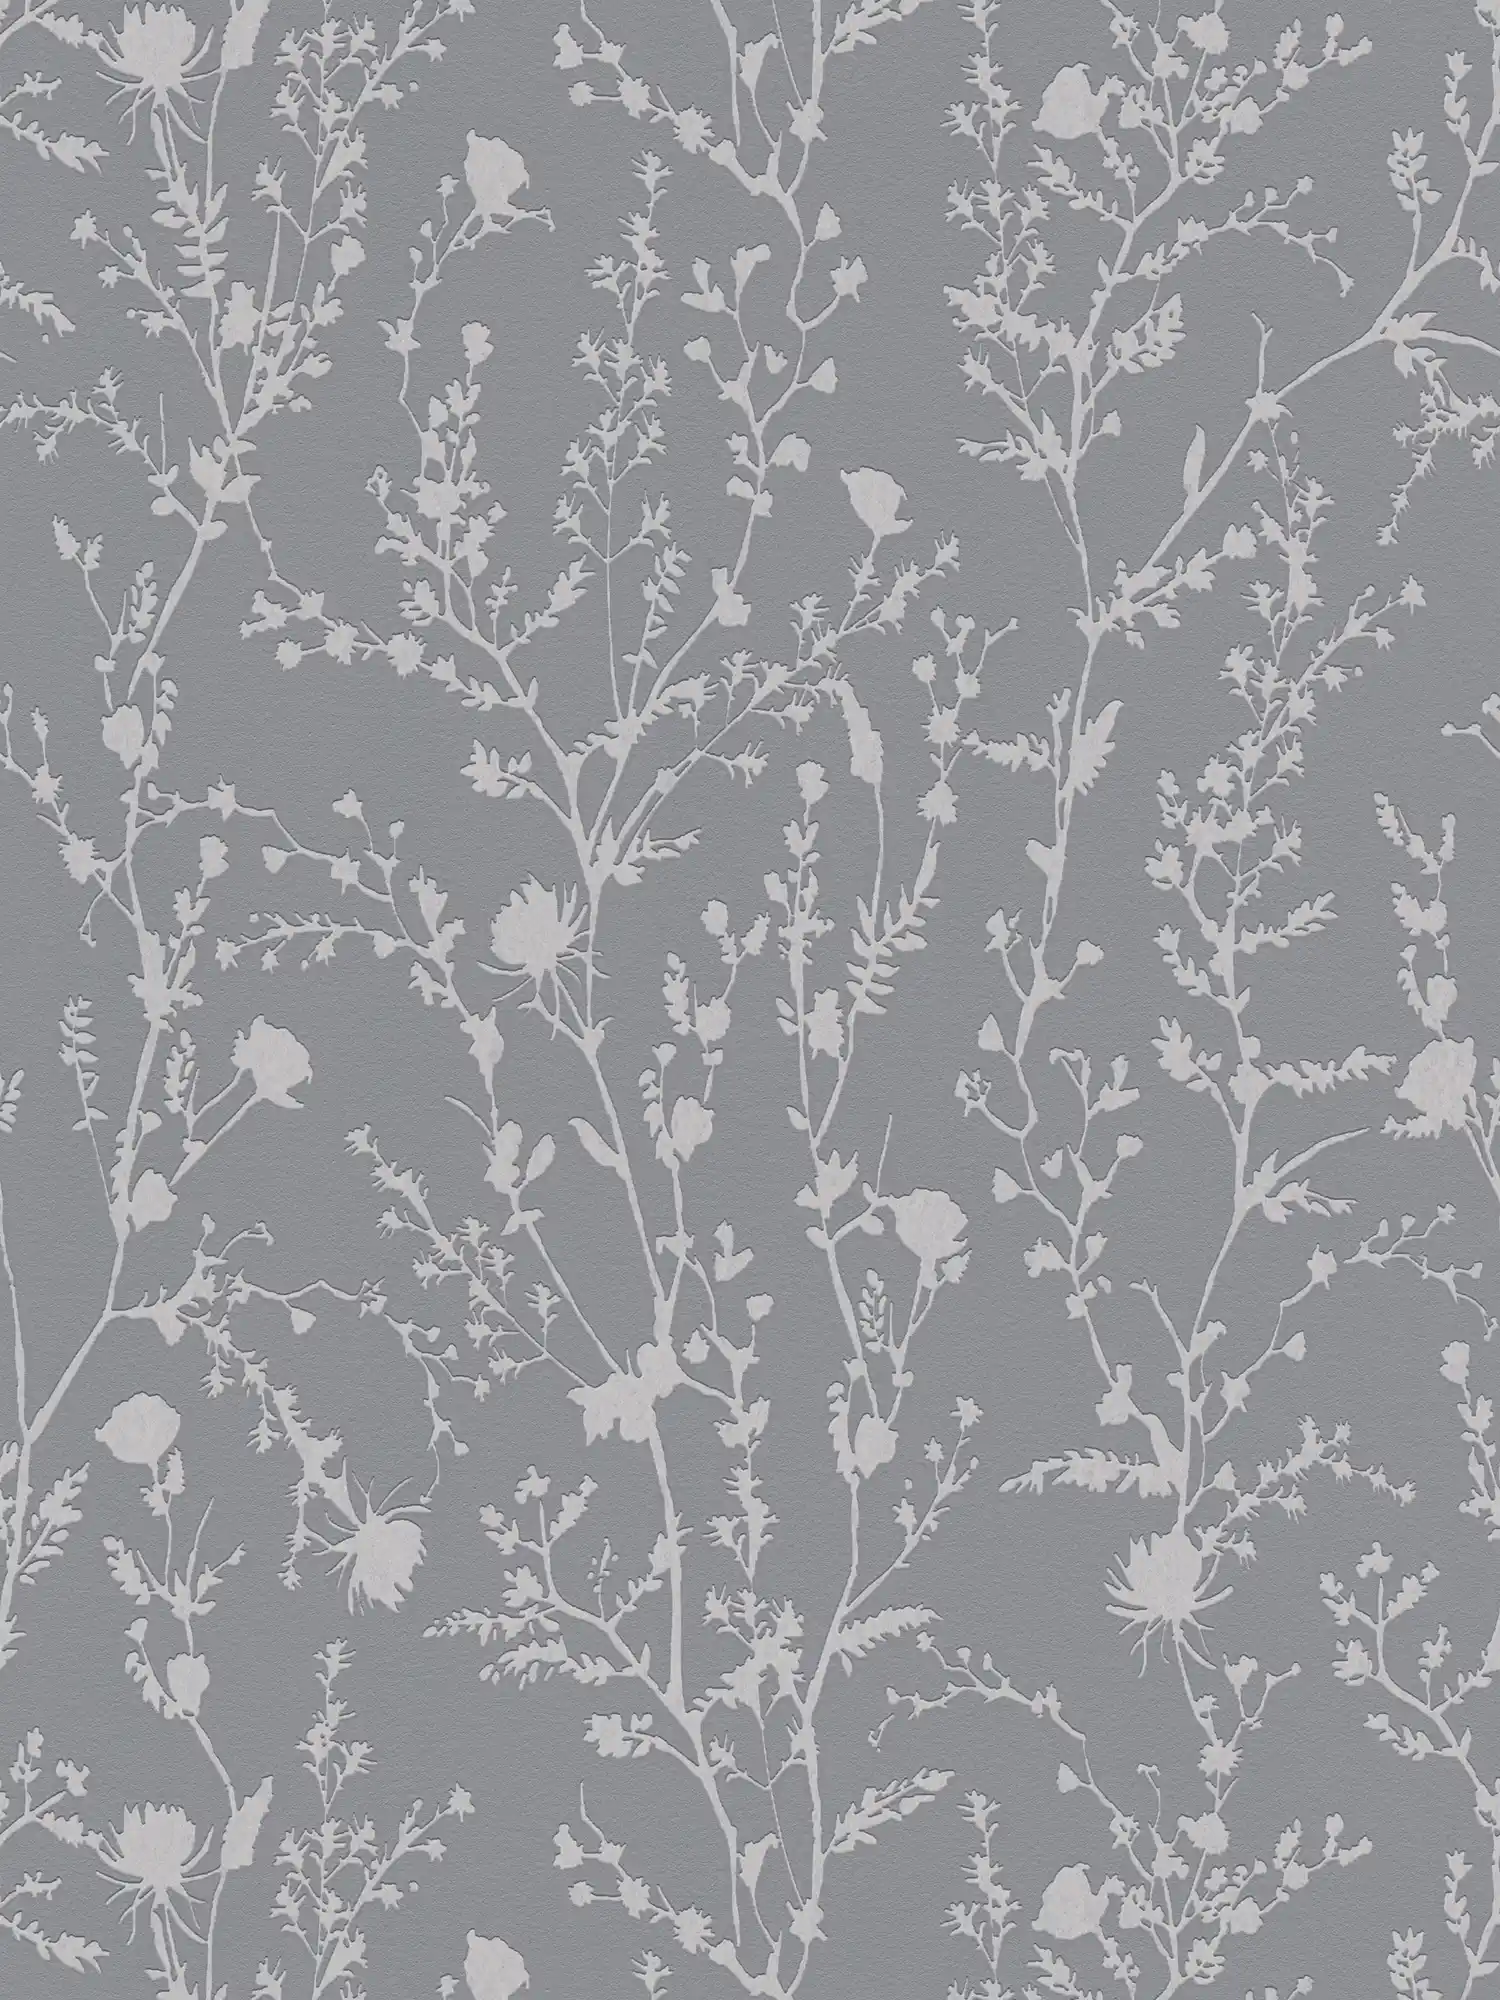 Bloemrijkbehang met zacht gras- en bloesemmotief - grijs, zilver
